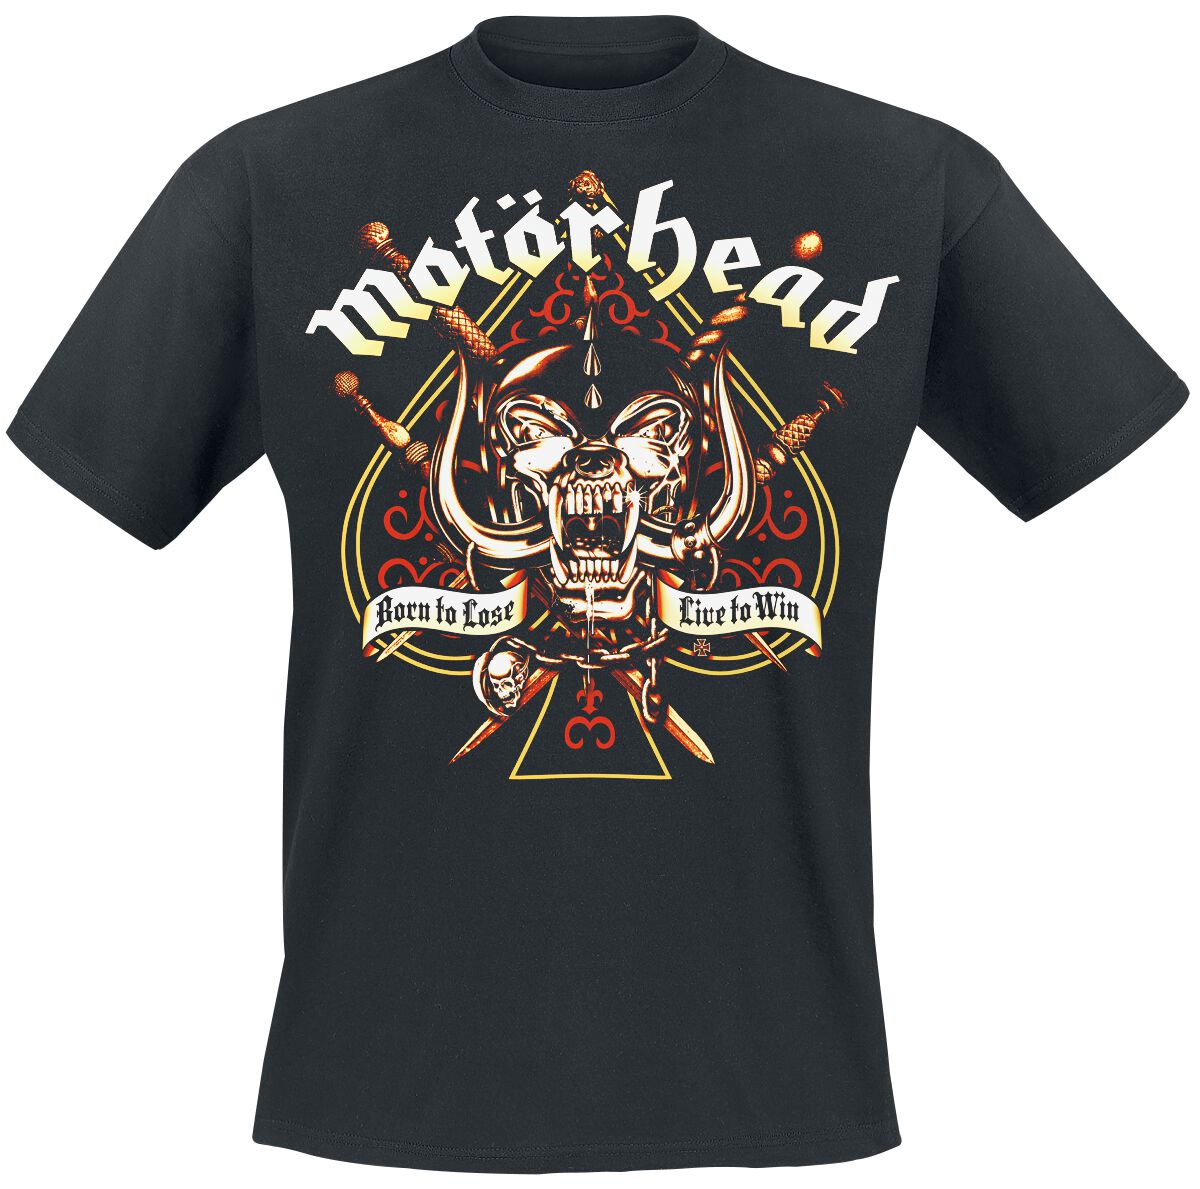 Motörhead T-Shirt - Sword Spade - L bis 4XL - für Männer - Größe XL - schwarz  - Lizenziertes Merchandise!